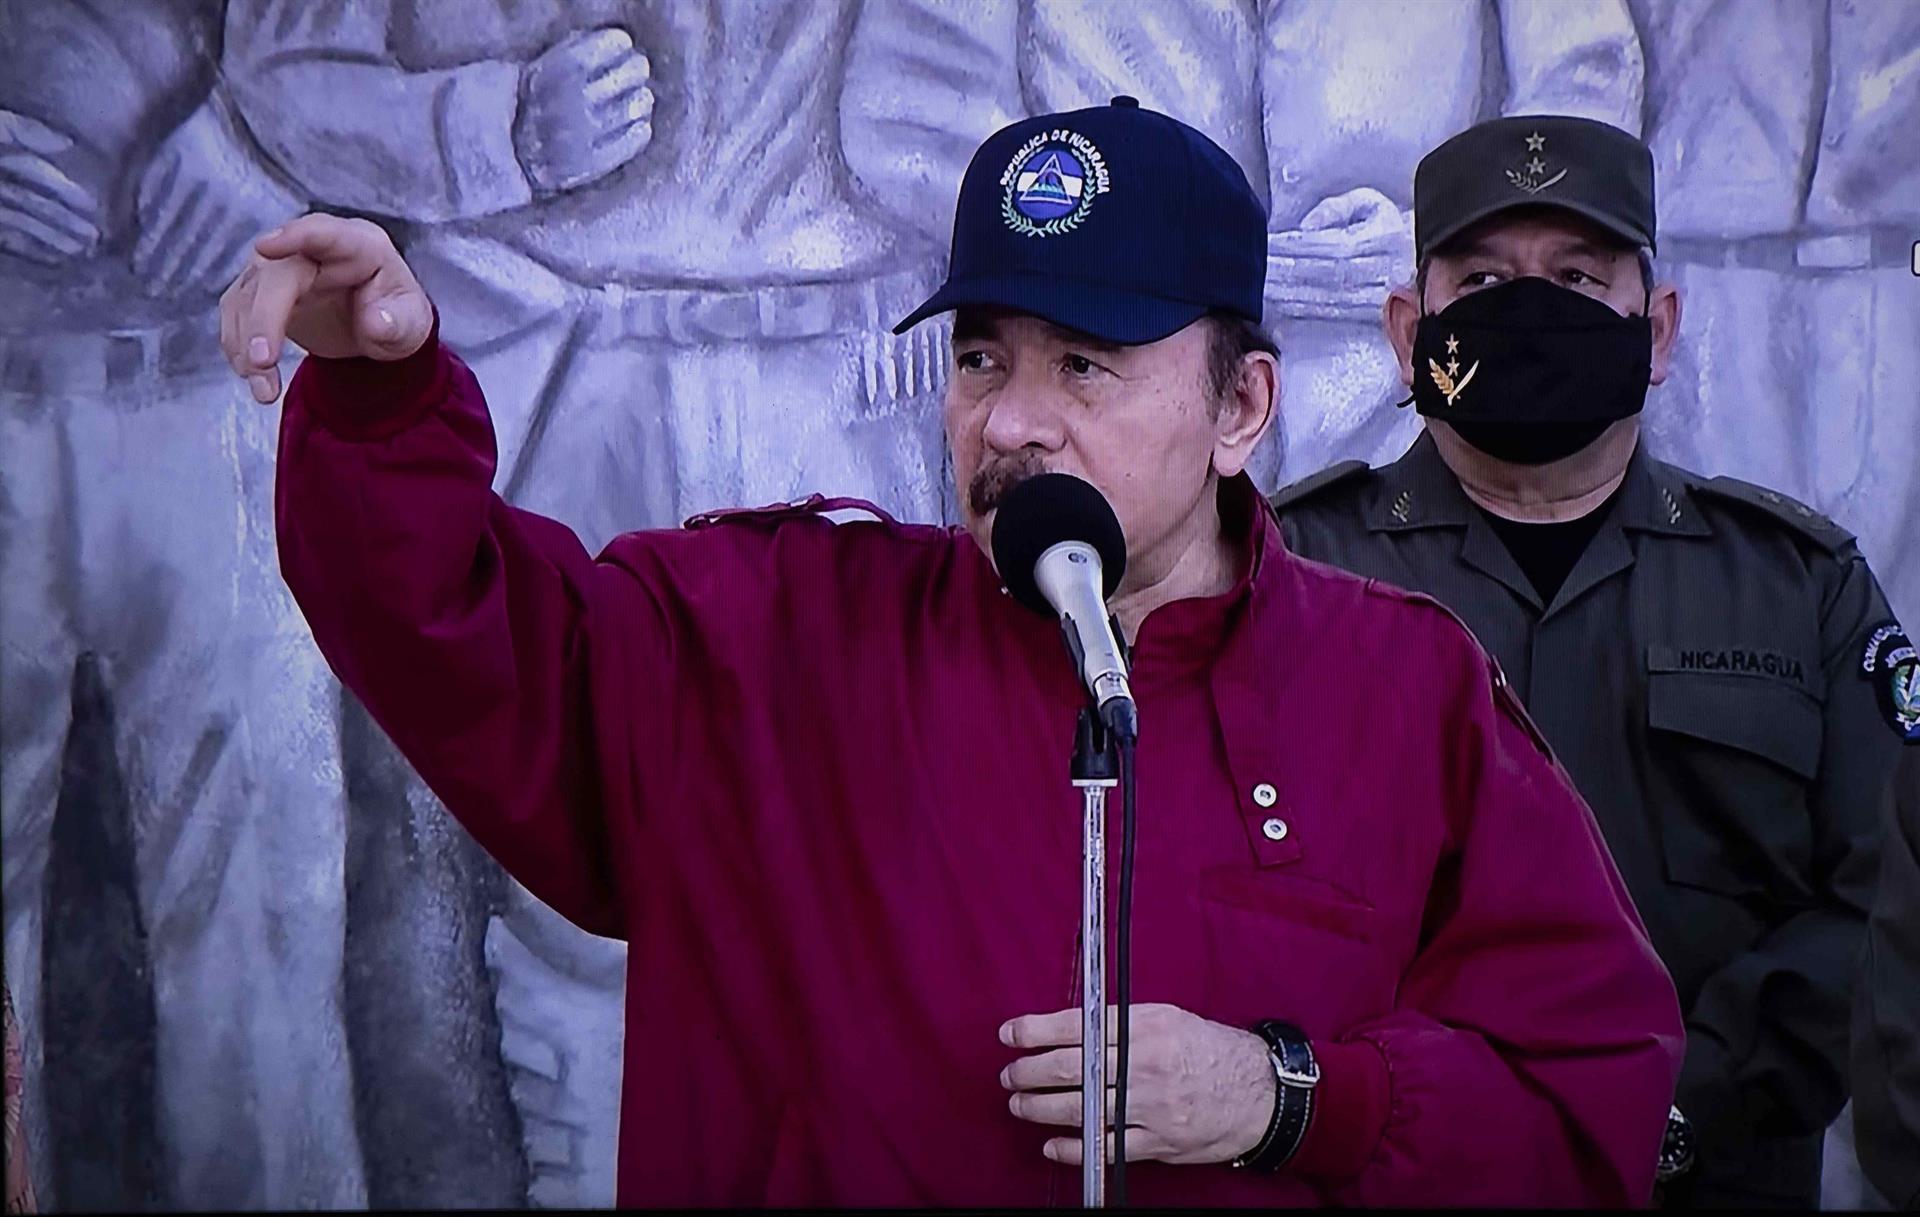 La prensa de Nicaragua suprime temas políticos tras amenazas del Gobierno